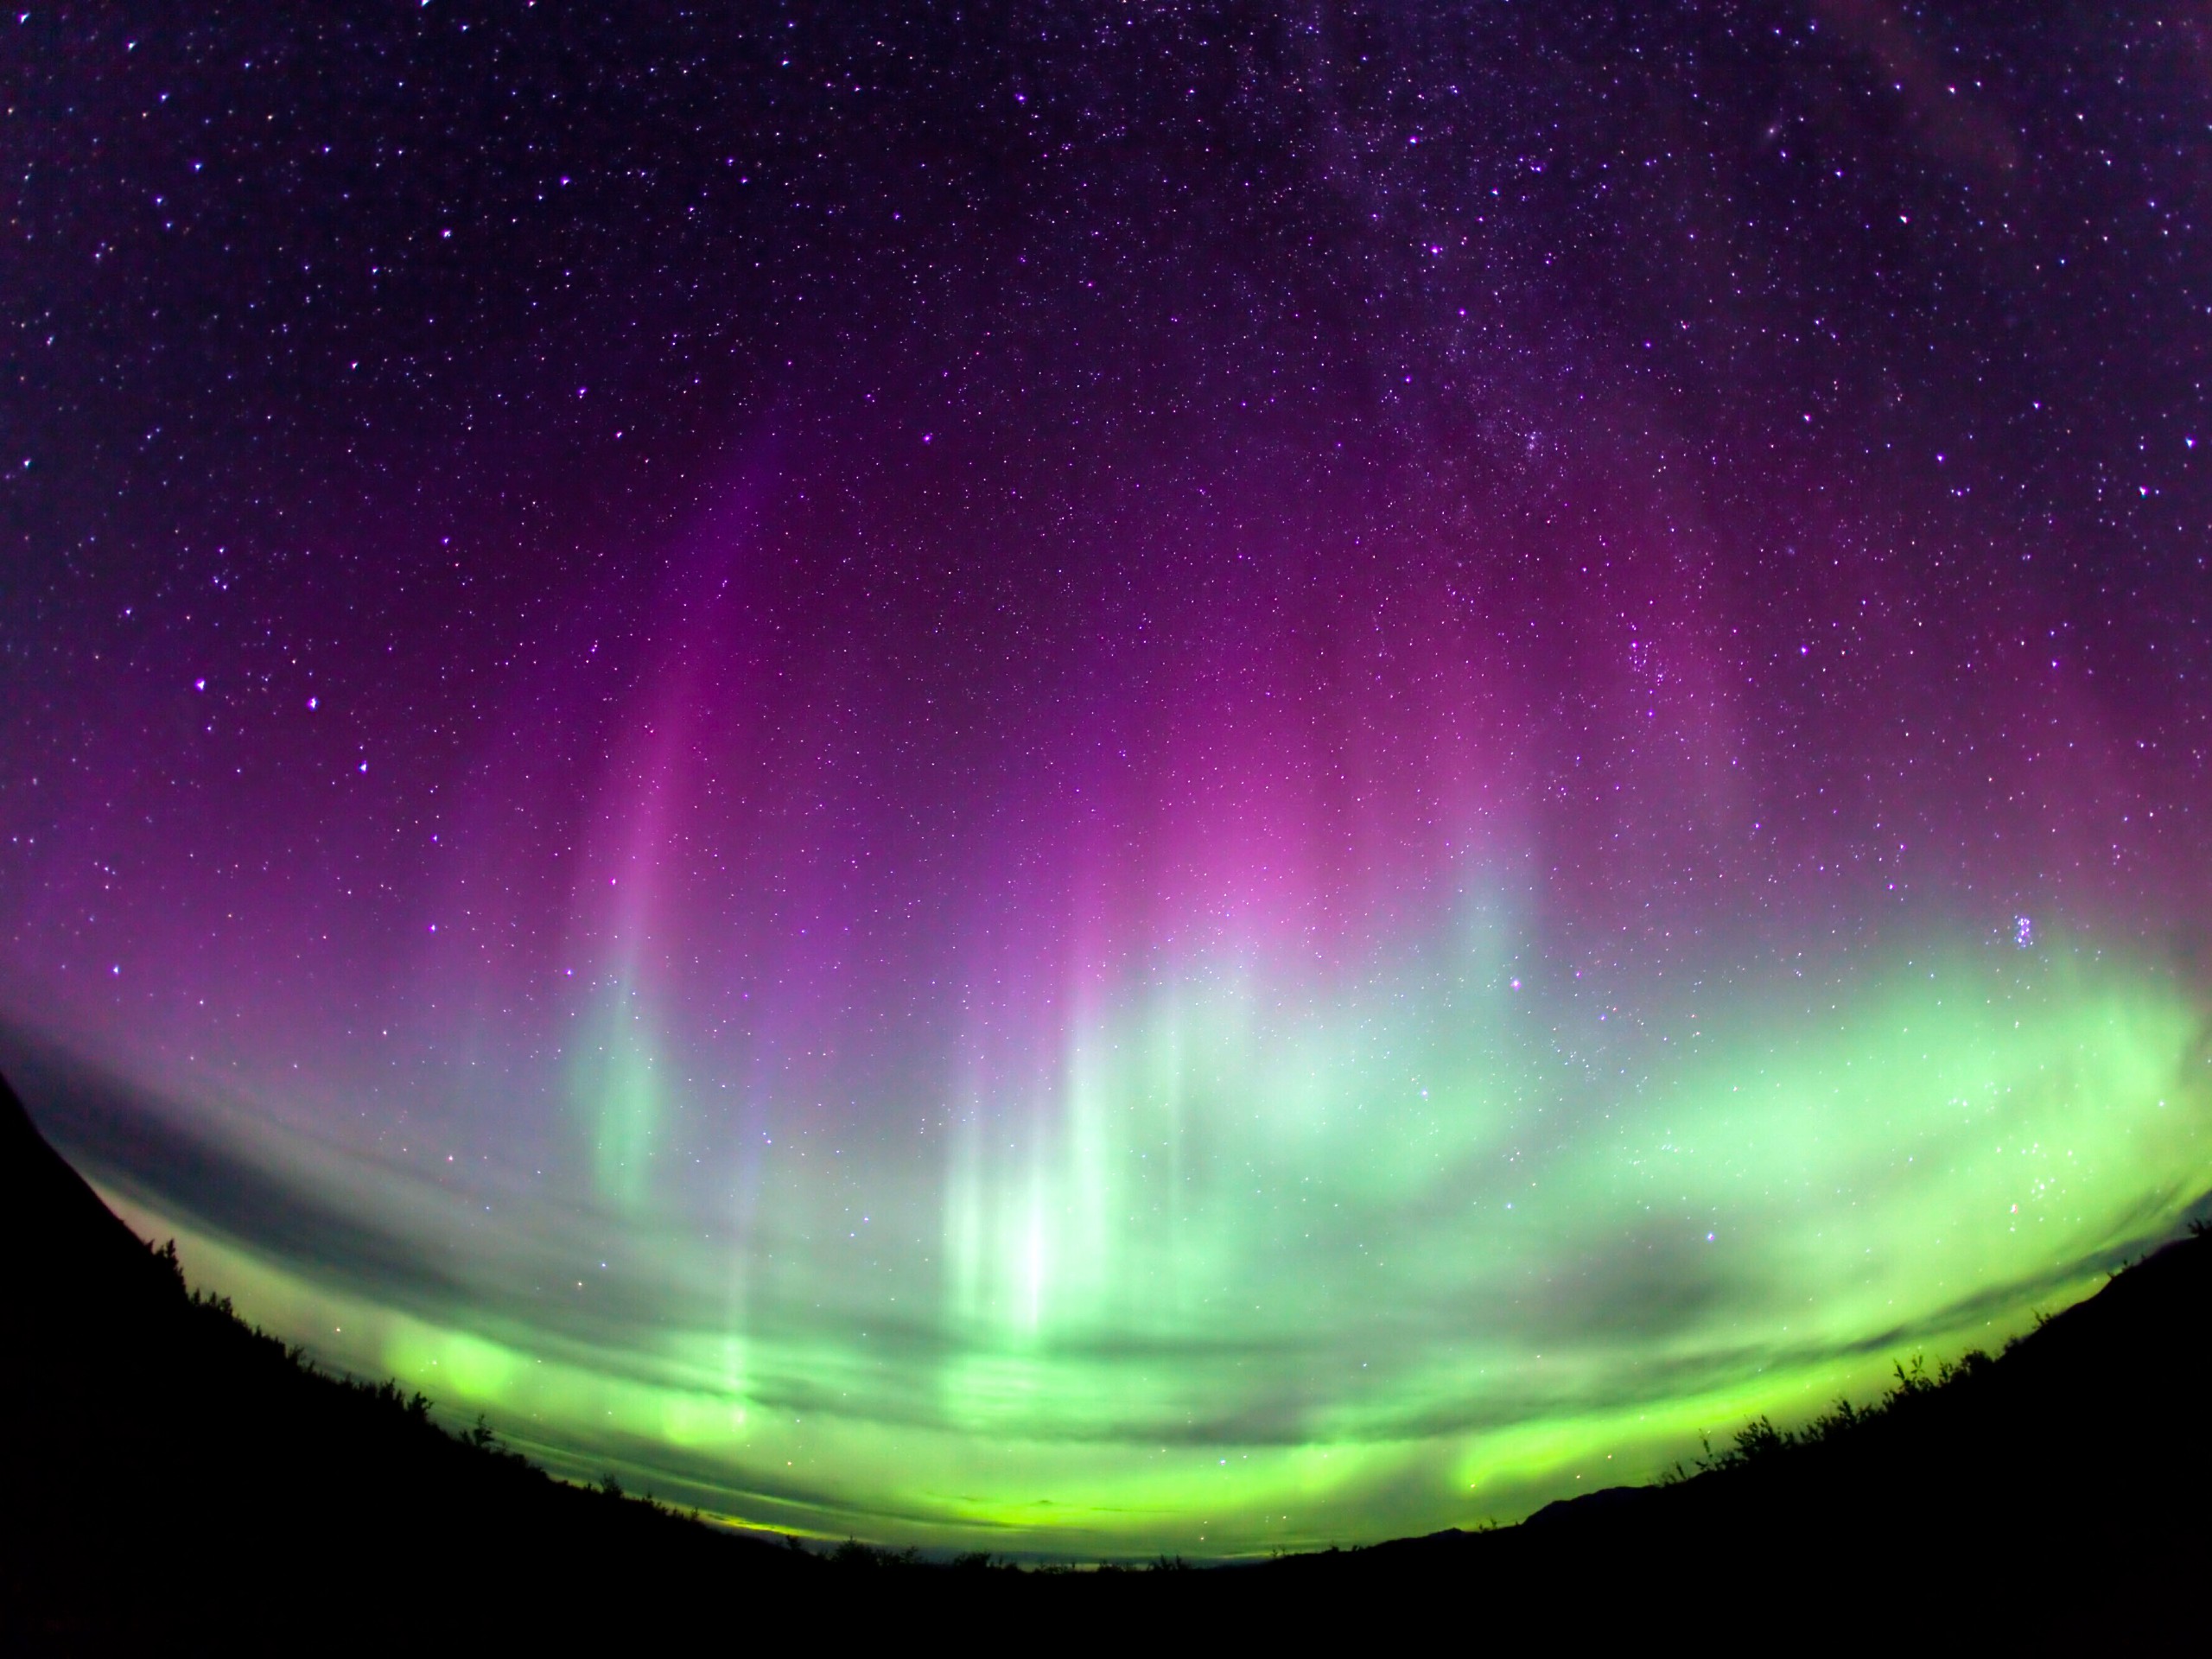 Stunning Aurora Borealis